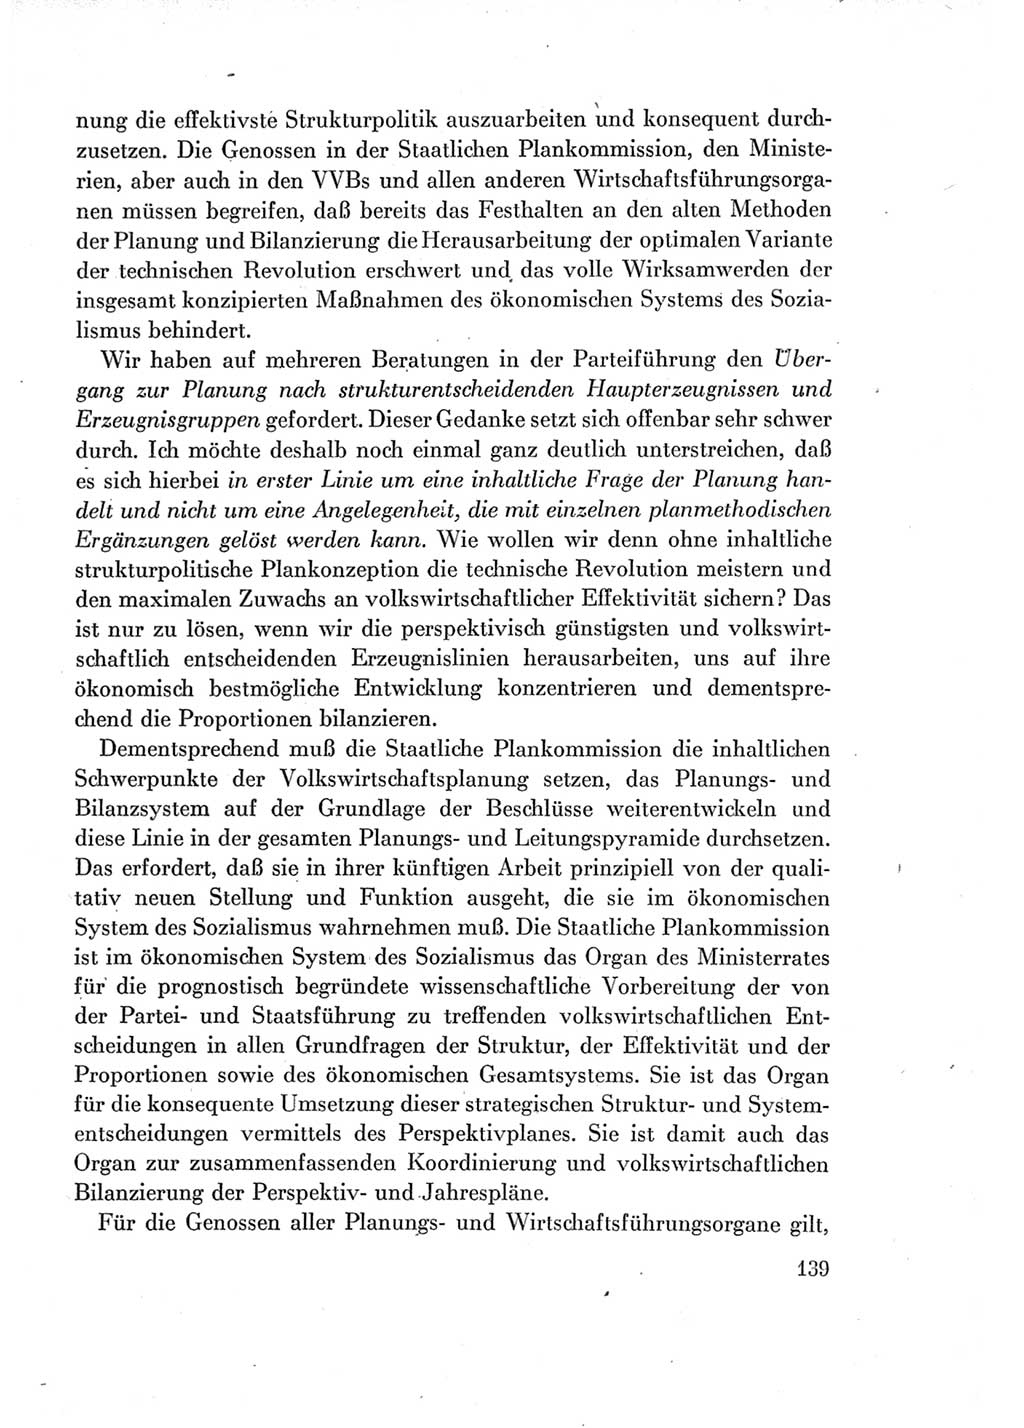 Protokoll der Verhandlungen des Ⅶ. Parteitages der Sozialistischen Einheitspartei Deutschlands (SED) [Deutsche Demokratische Republik (DDR)] 1967, Band Ⅰ, Seite 139 (Prot. Verh. Ⅶ. PT SED DDR 1967, Bd. Ⅰ, S. 139)